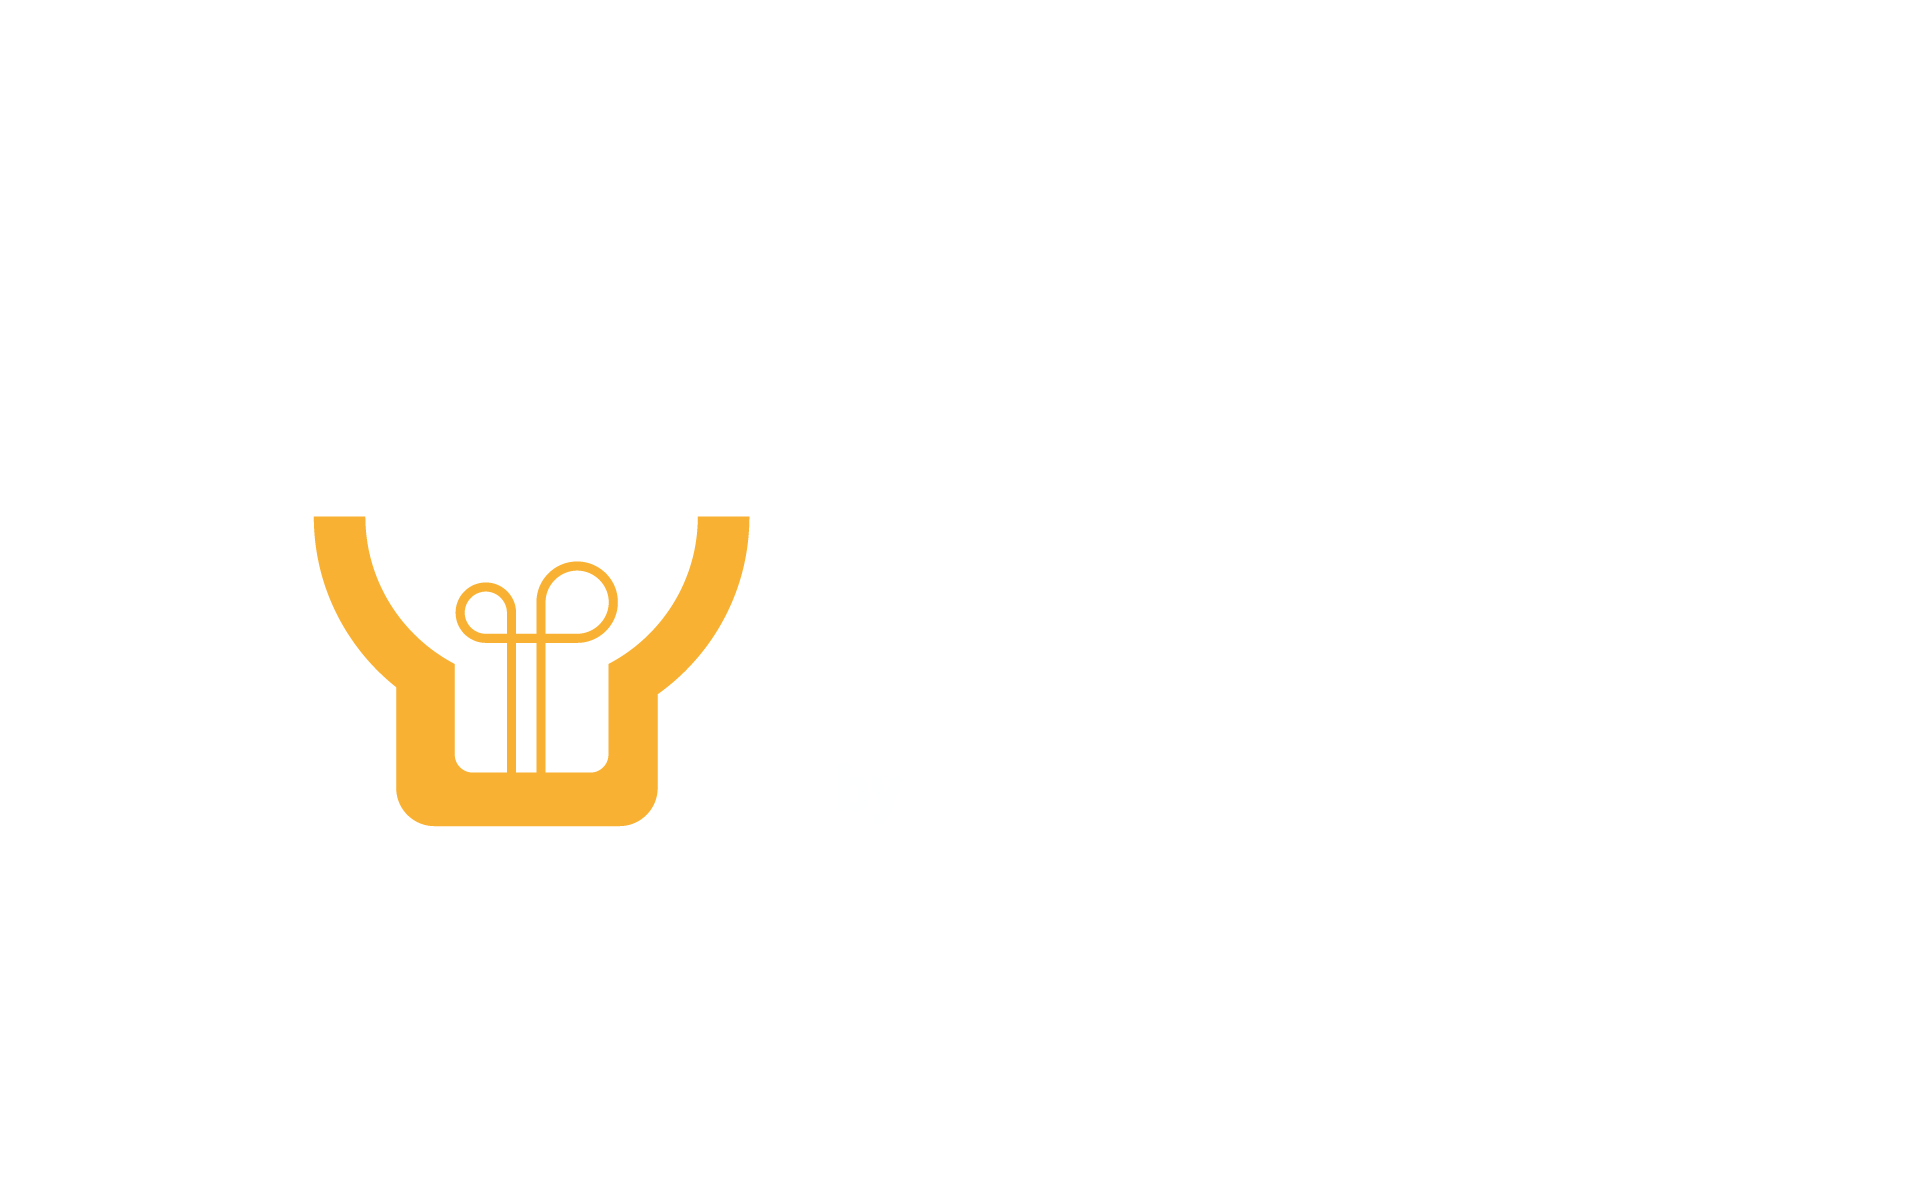 ABSOLAR Inside – Norway